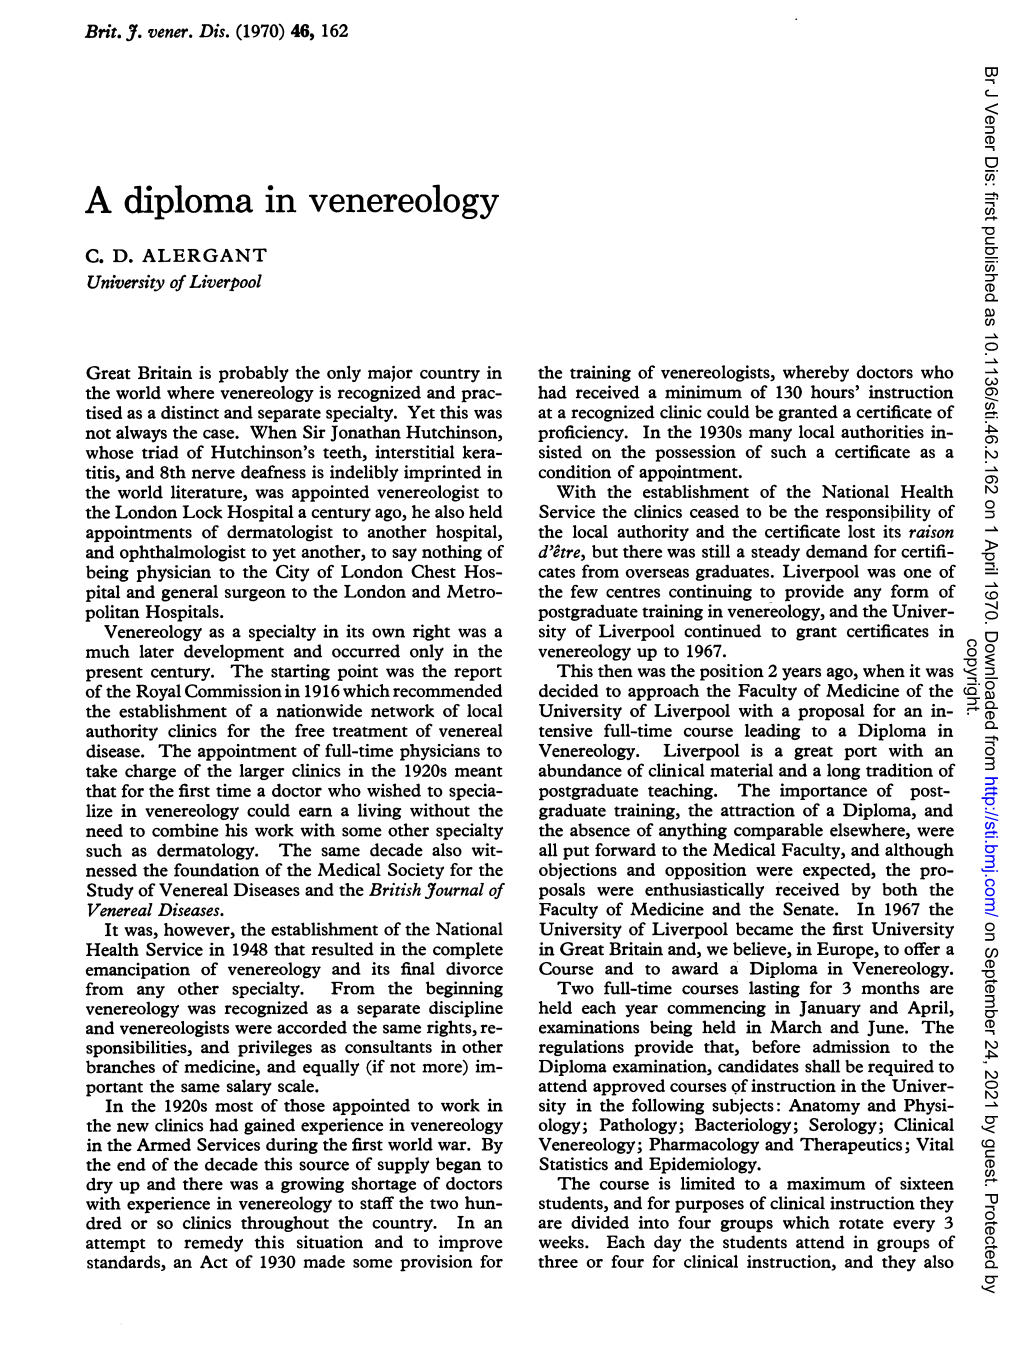 A Diploma in Venereology